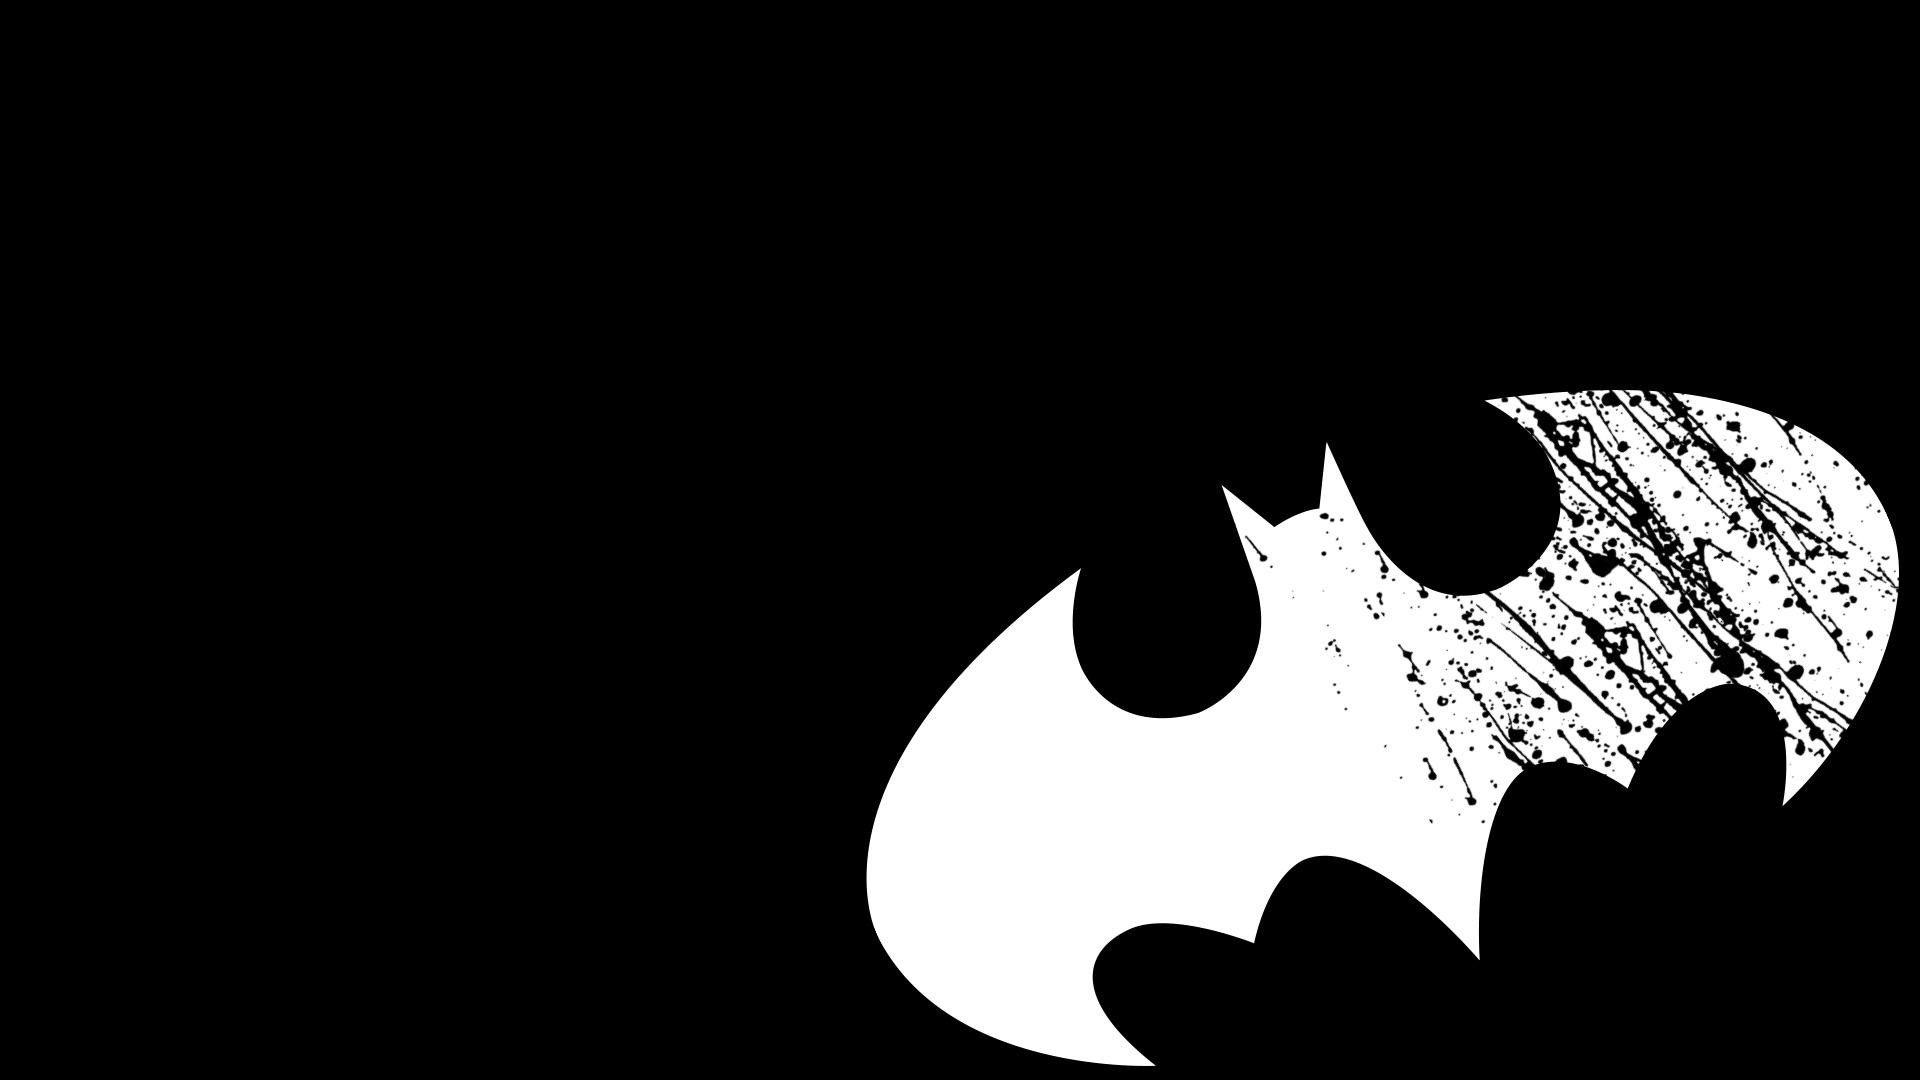 4. batman symbol wallpaper HD4